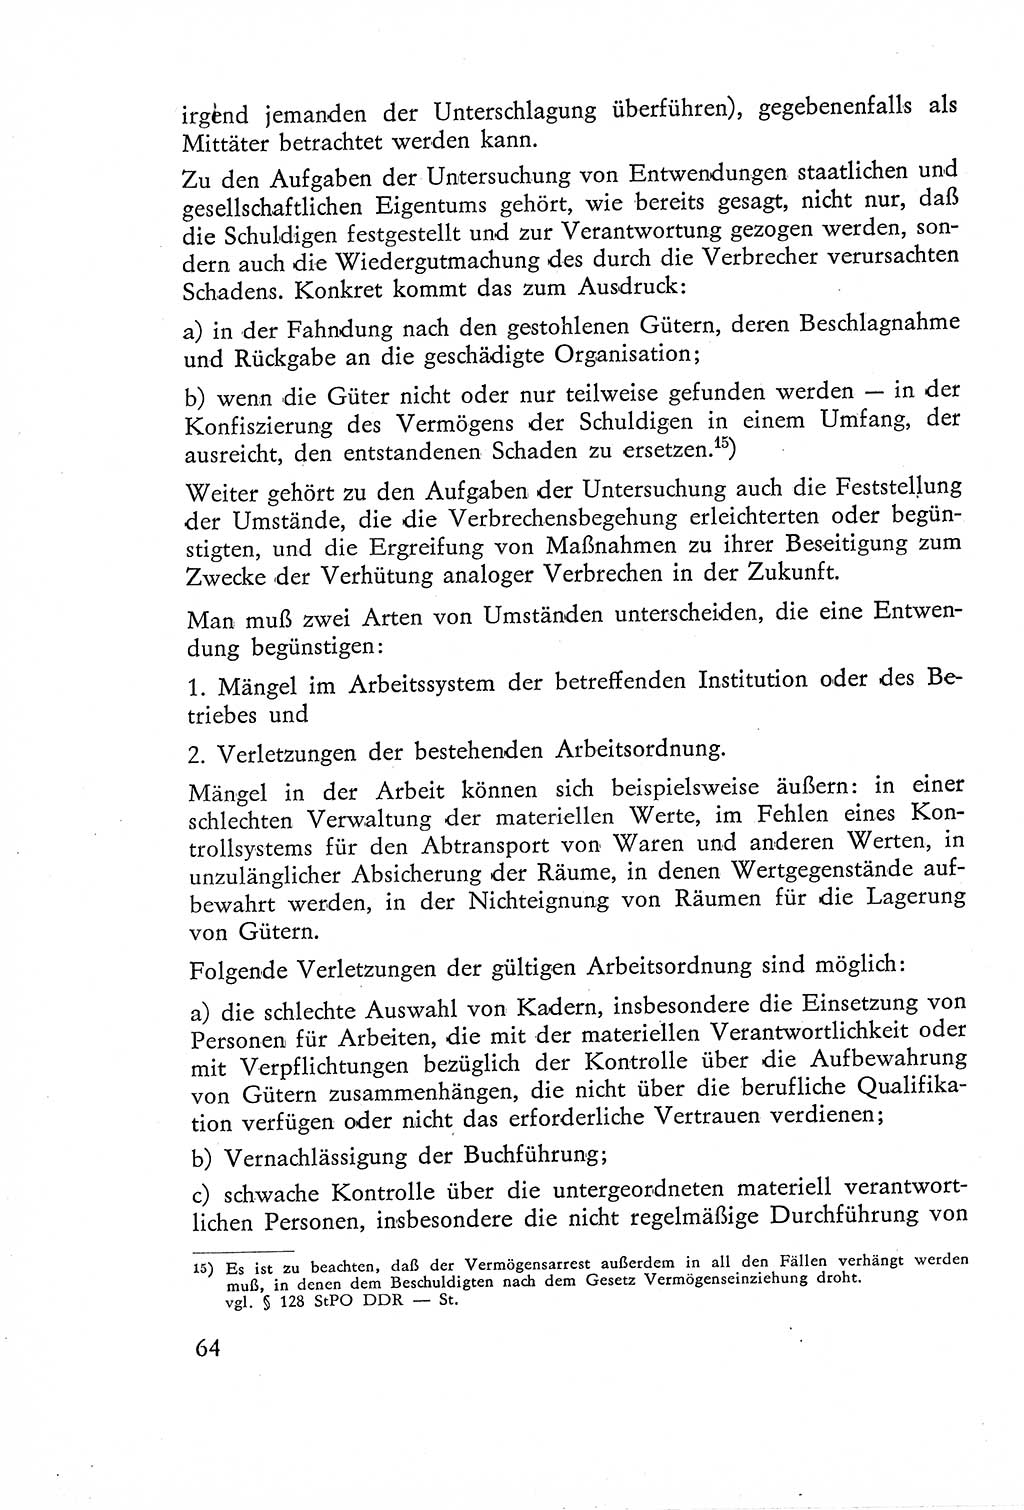 Die Untersuchung einzelner Verbrechensarten [Deutsche Demokratische Republik (DDR)] 1960, Seite 64 (Unters. Verbr.-Art. DDR 1960, S. 64)